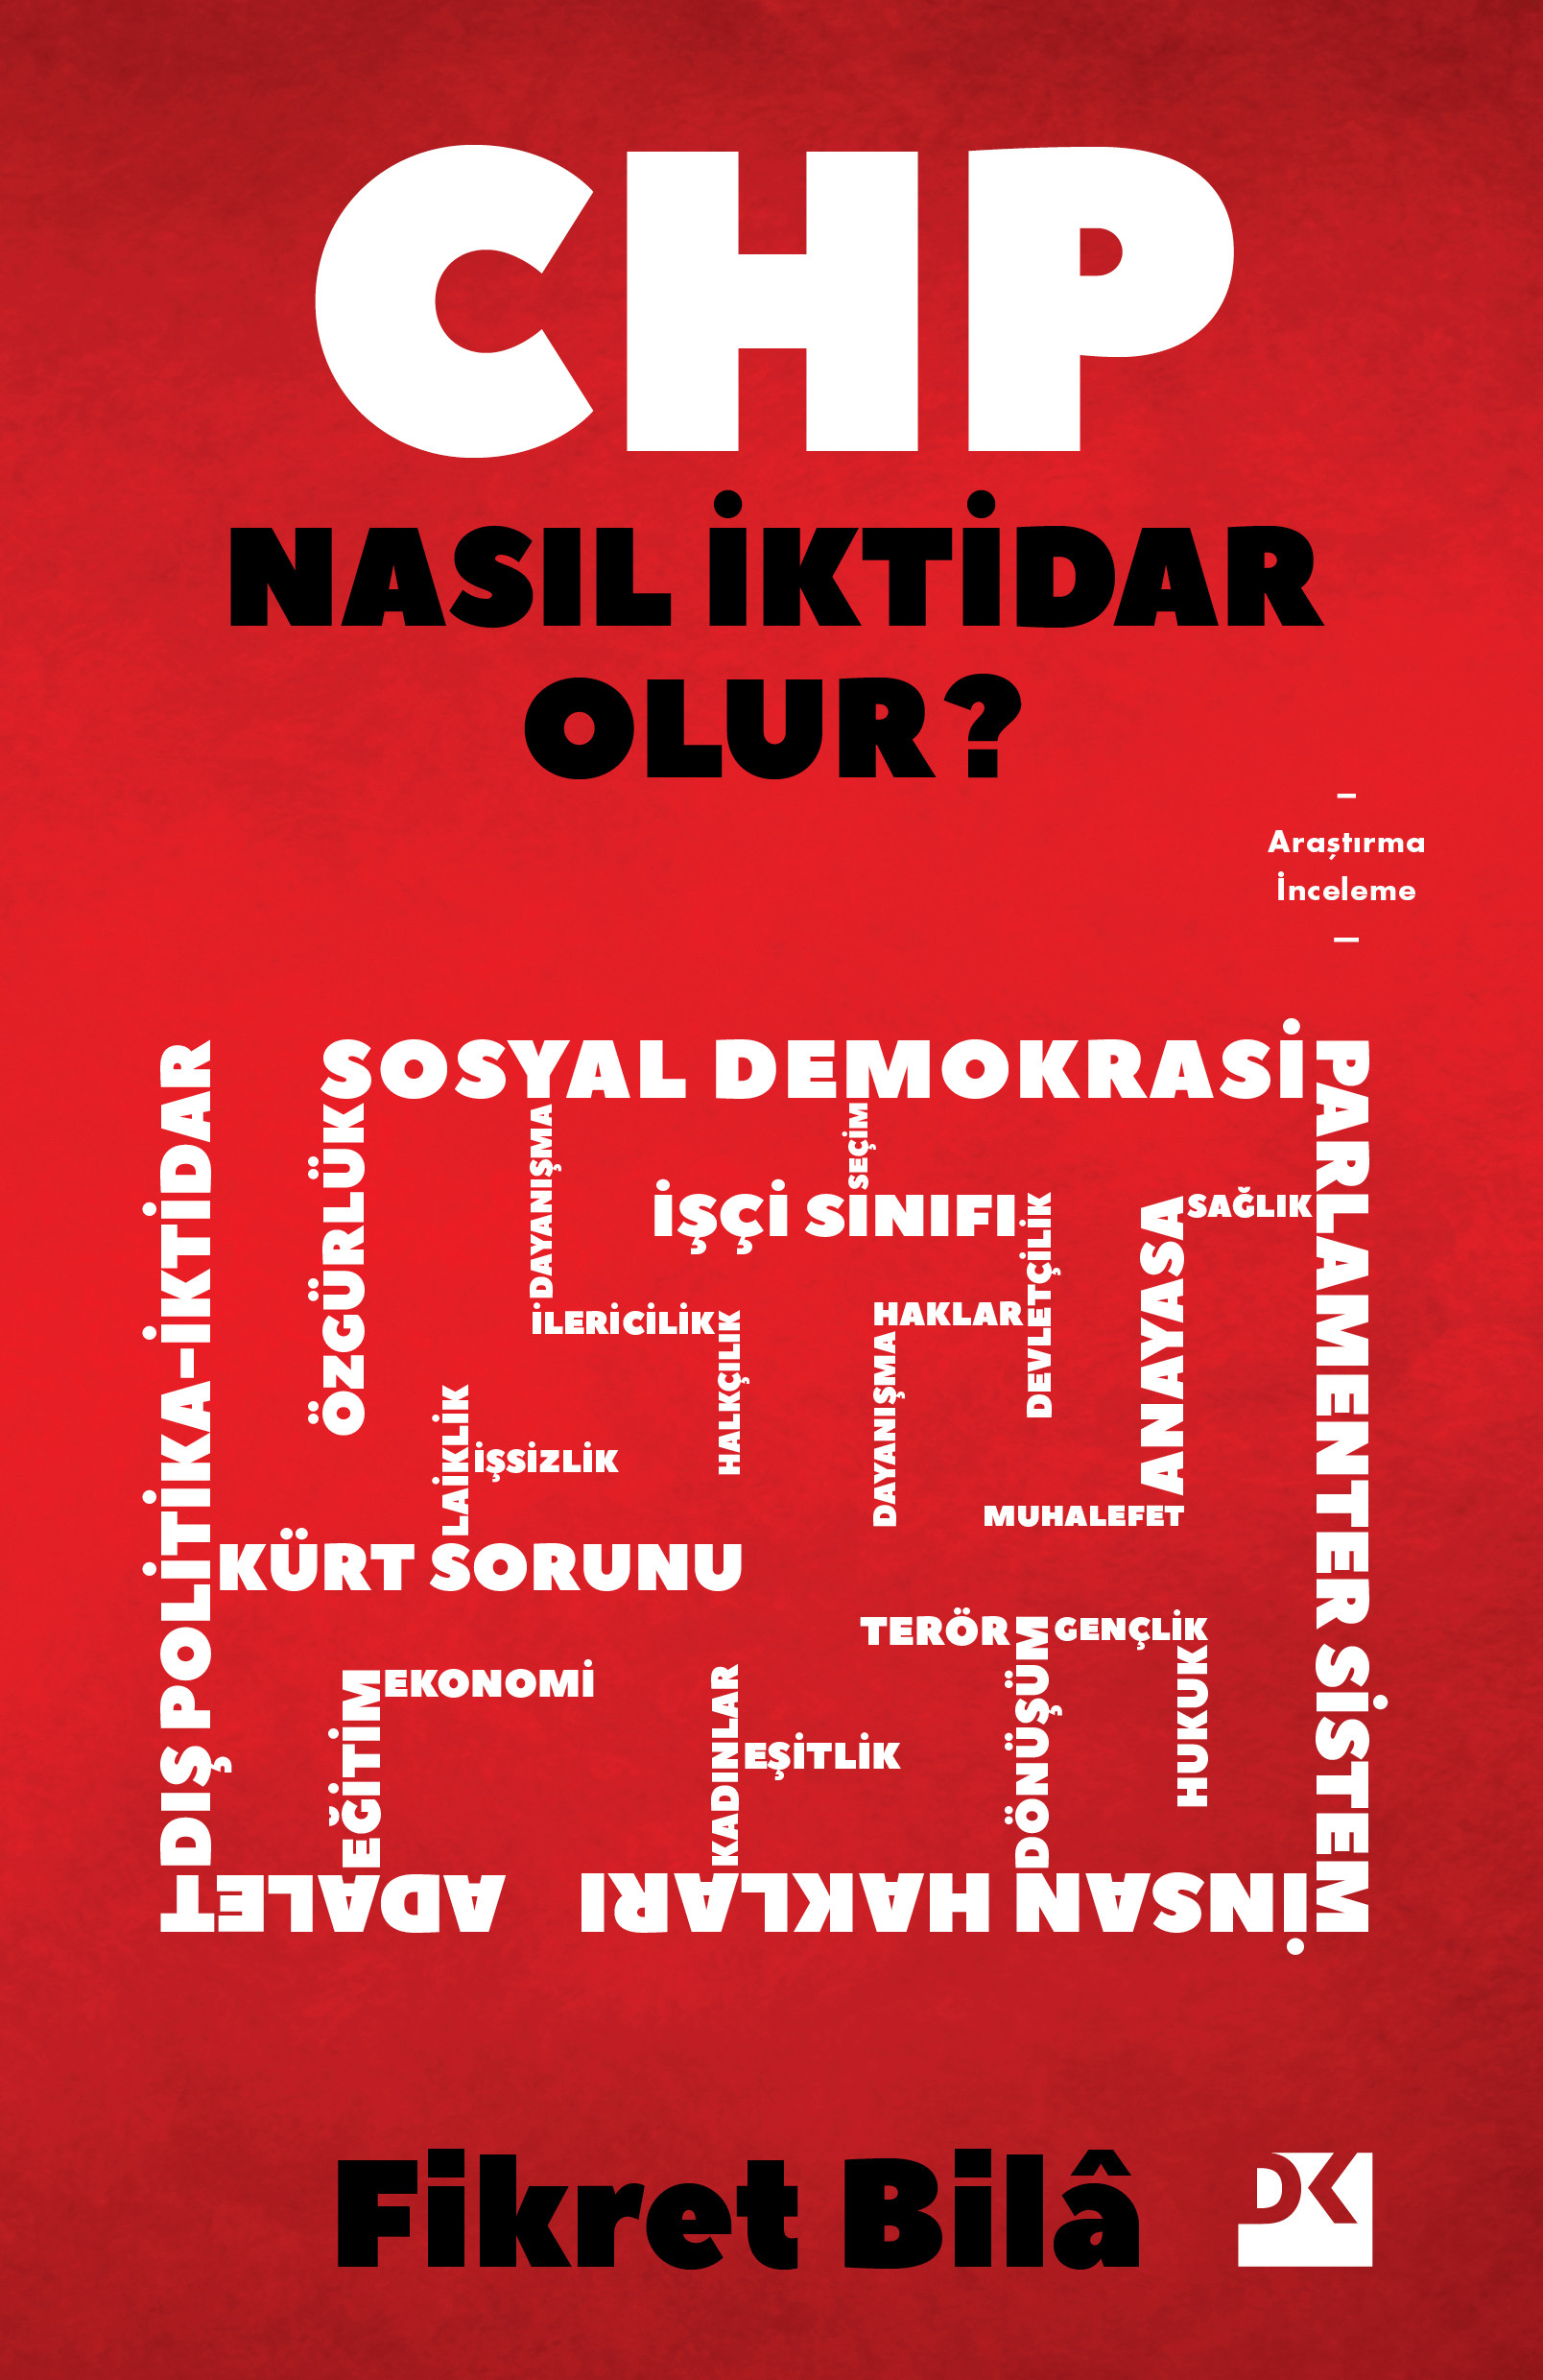 Fikret Bila: CHP dayanışma ekonomisini yaygınlaştırabilirse iktidarında Türkiye geneline yayabilir - Resim : 2